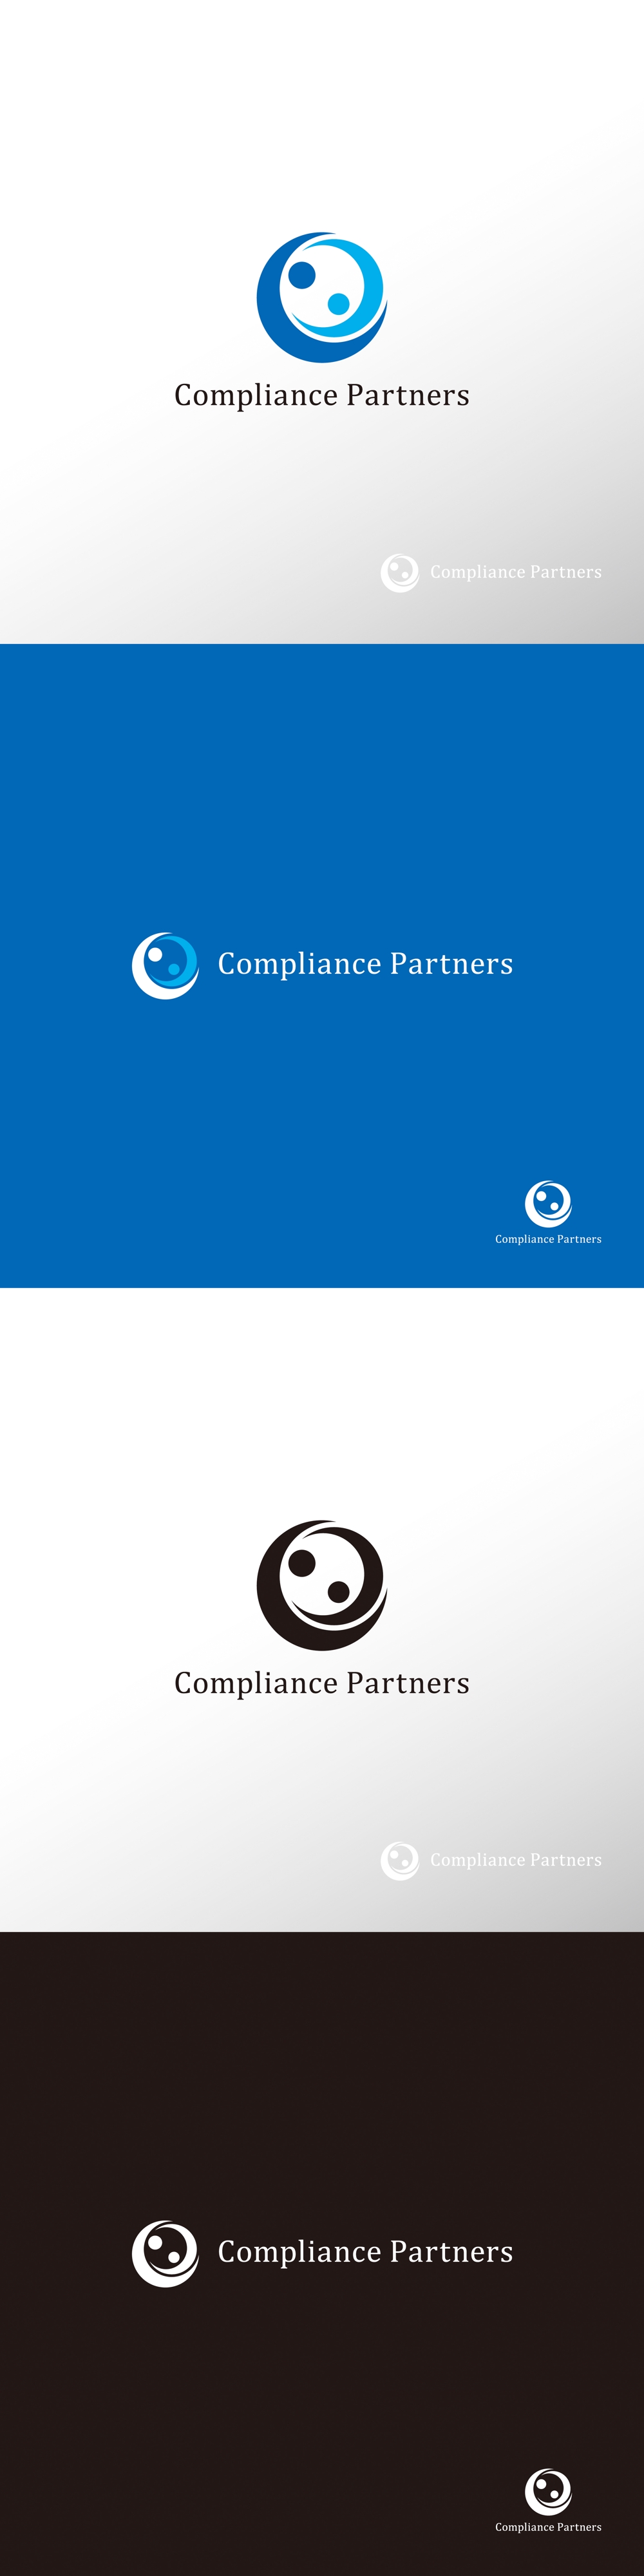 コンサル_Compliance Partners_ロゴA1.jpg